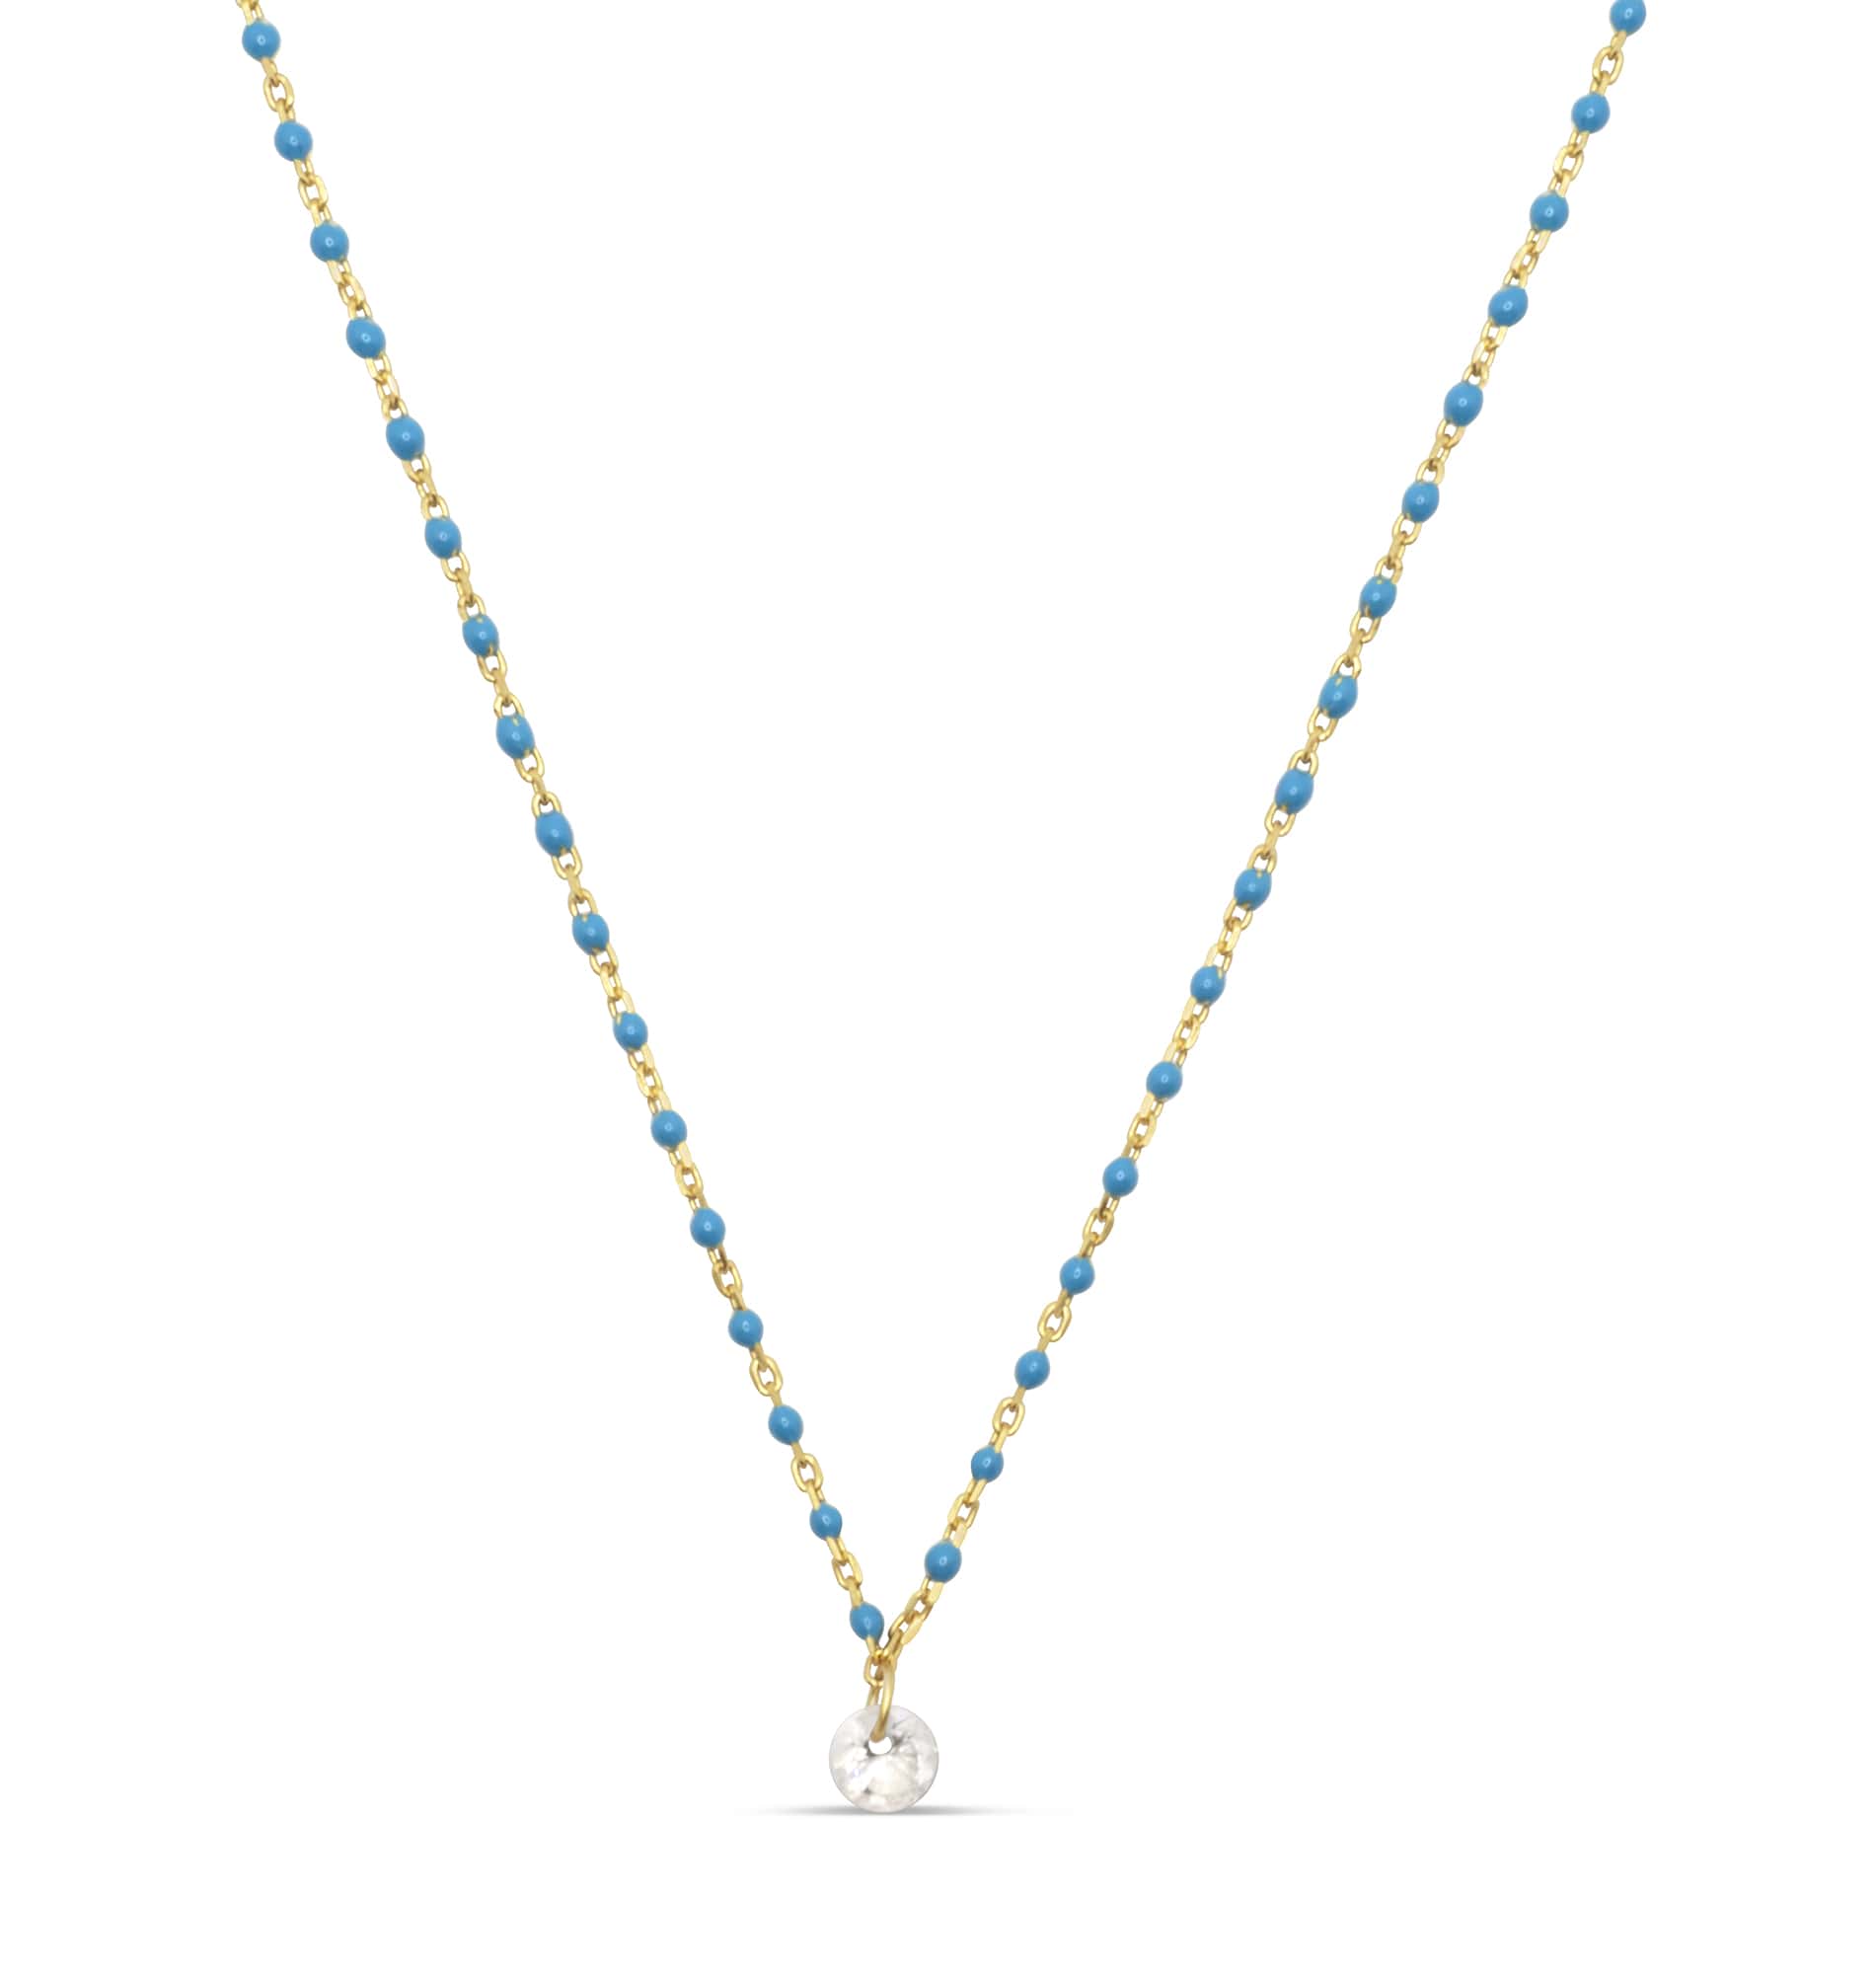 Blue enamel with cubic zirconia drop necklace